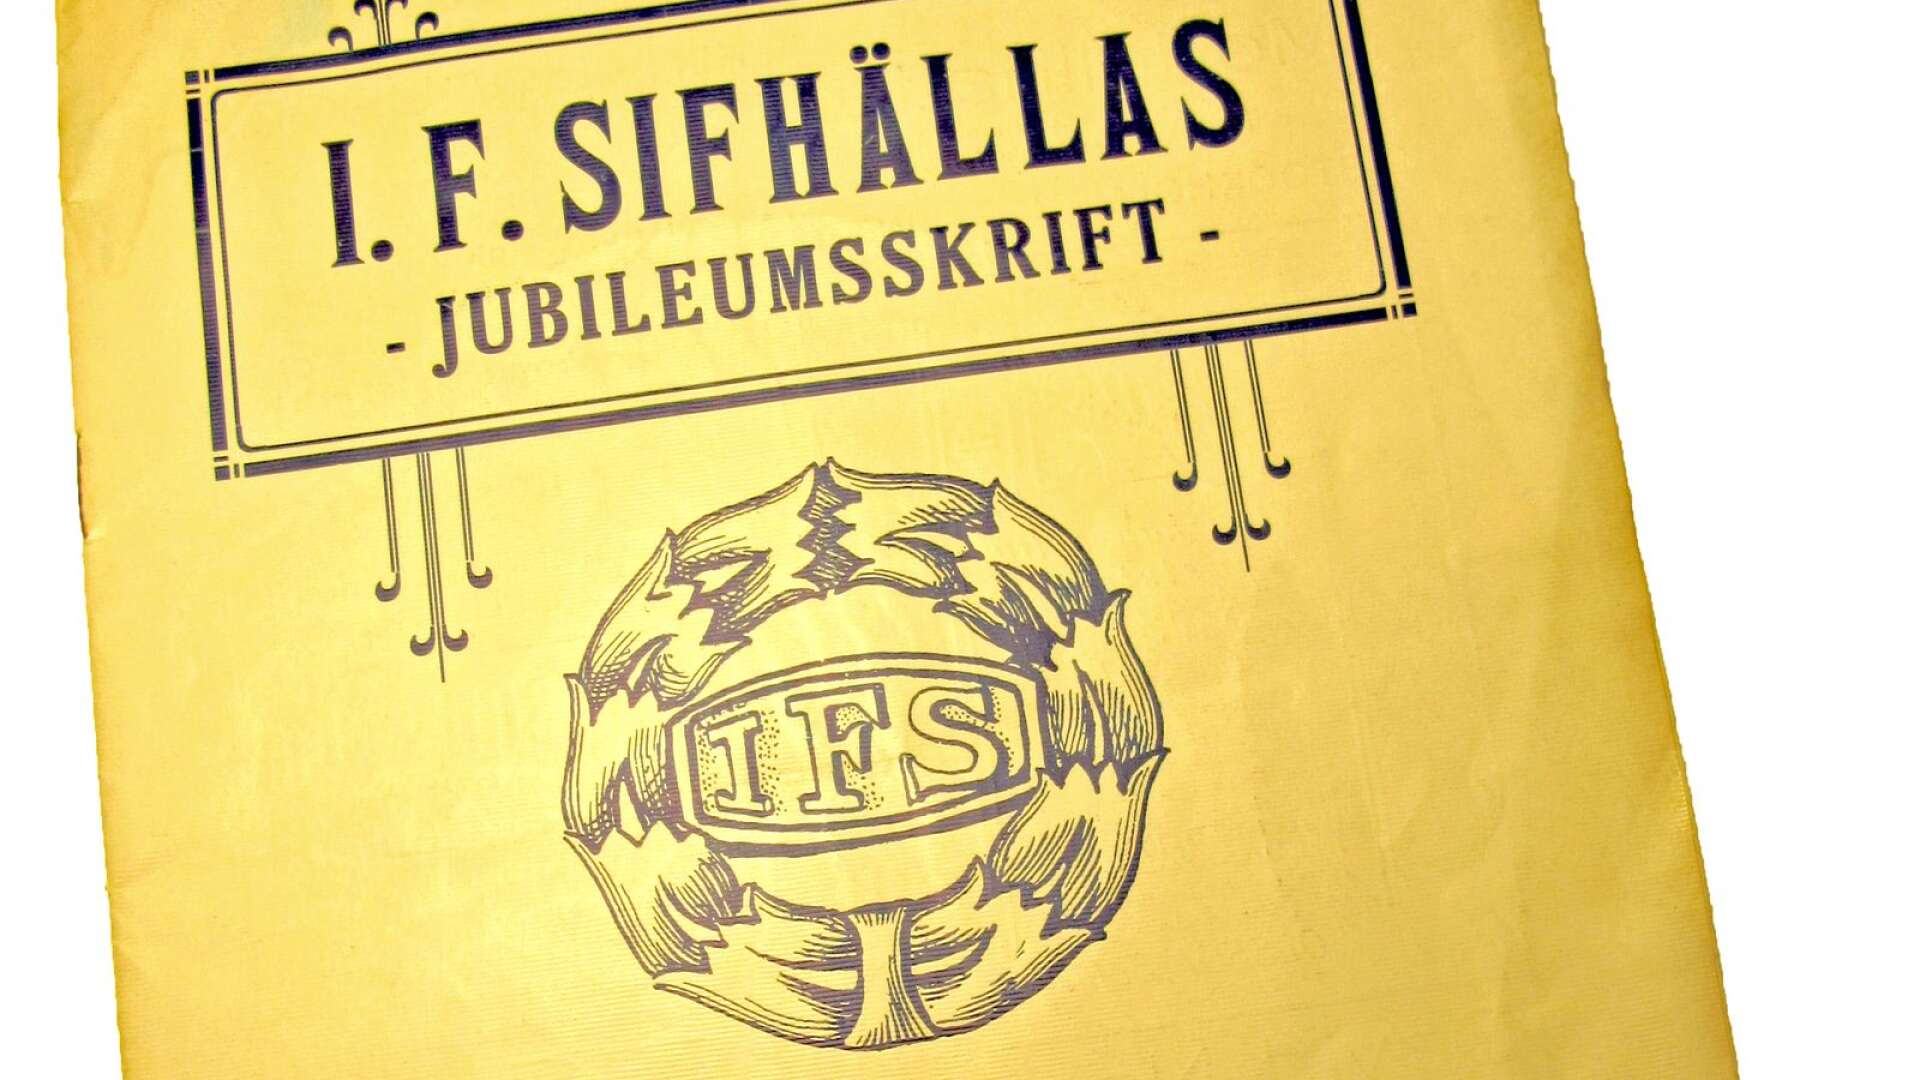 Sifhälla firade 15-årsjubileum för 95 år sedan och firade det med att ge ut en 16-sidig jubileumsskrift. Den innehåller totalt 72 annonser, som tillsammans ger en bild av Säffles affärer, hantverkare och industrier. 